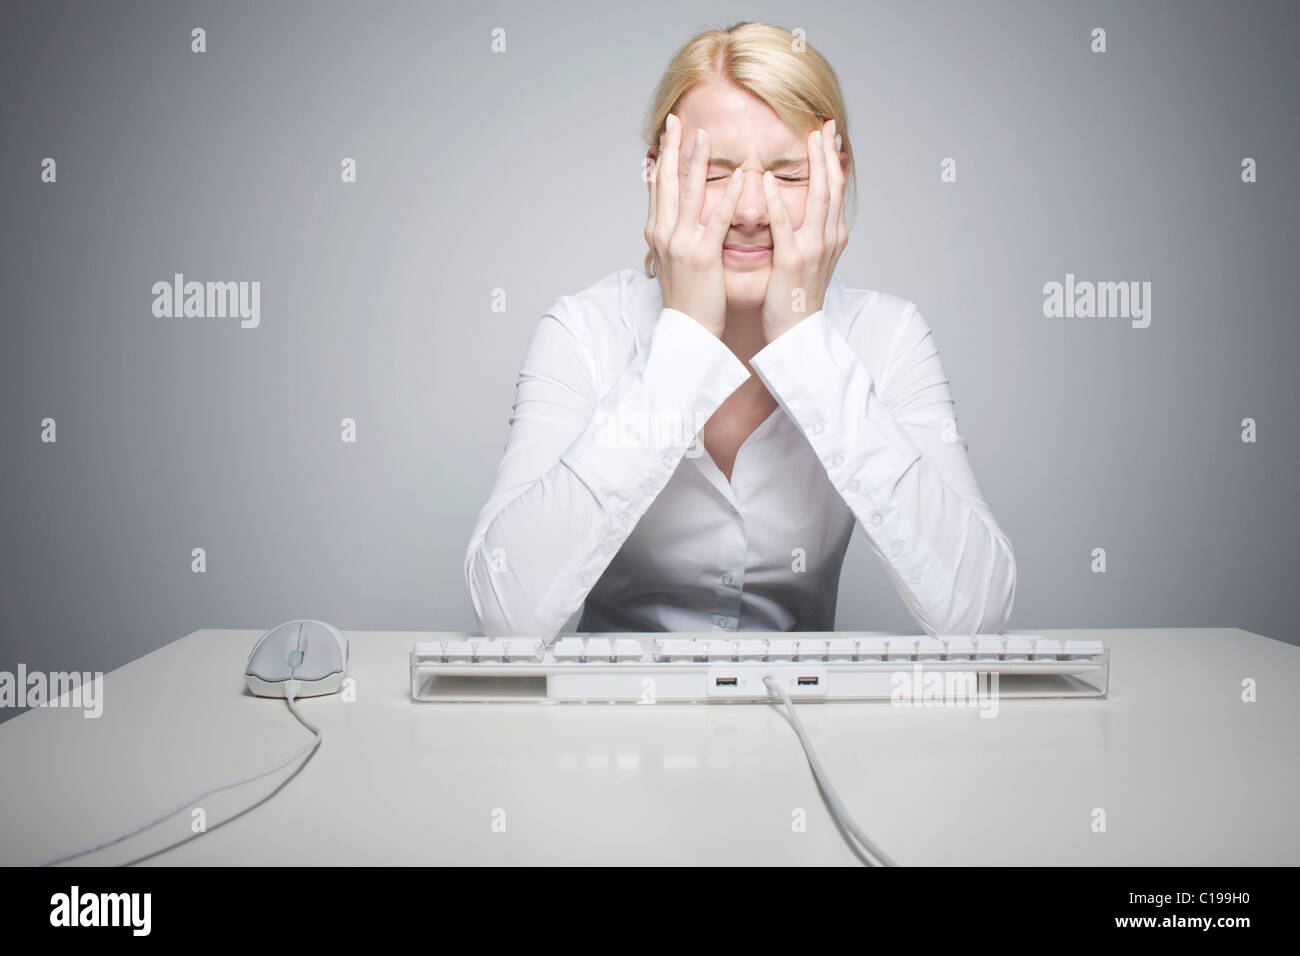 Mujer rubia joven sentado delante de un teclado de ordenador, desesperada Foto de stock